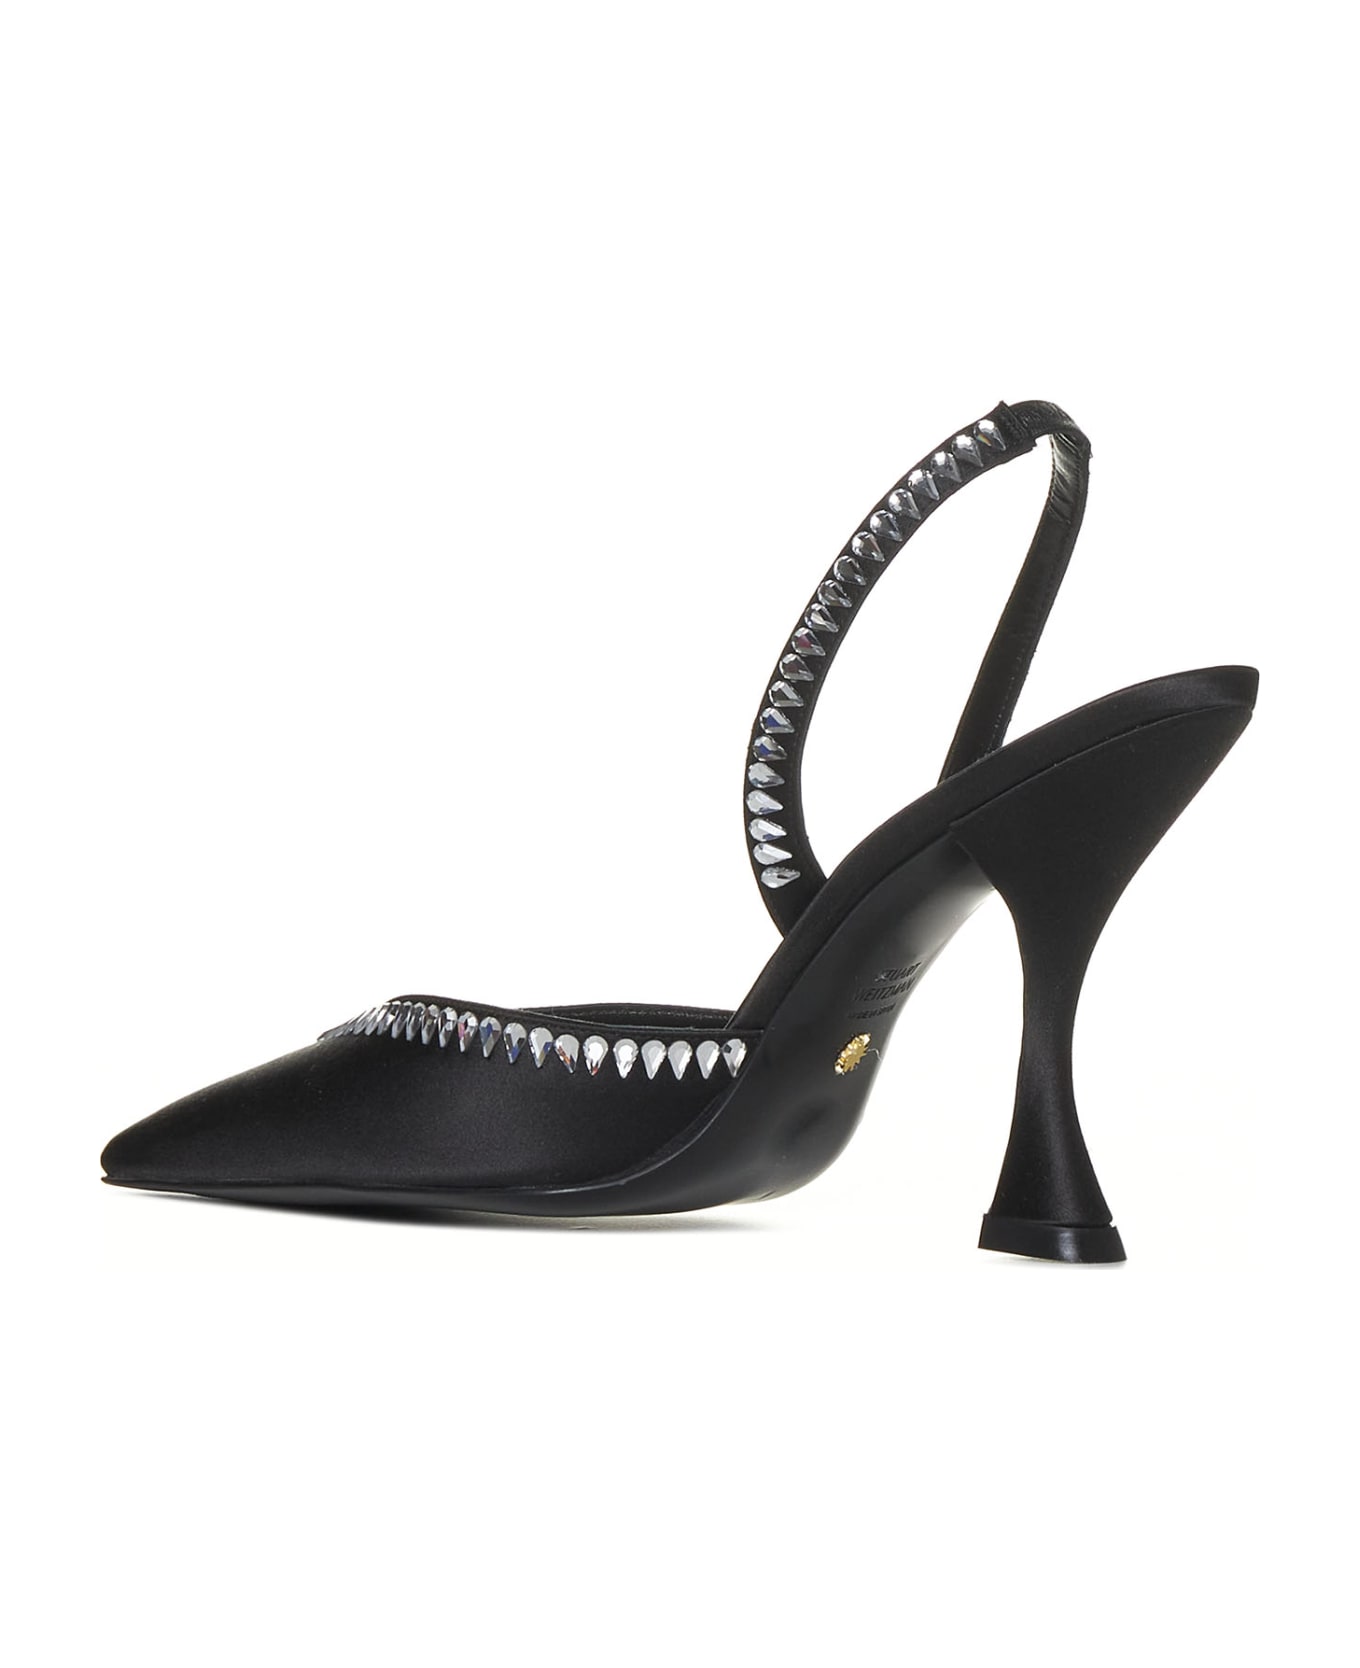 Stuart Weitzman High-heeled shoe - Black